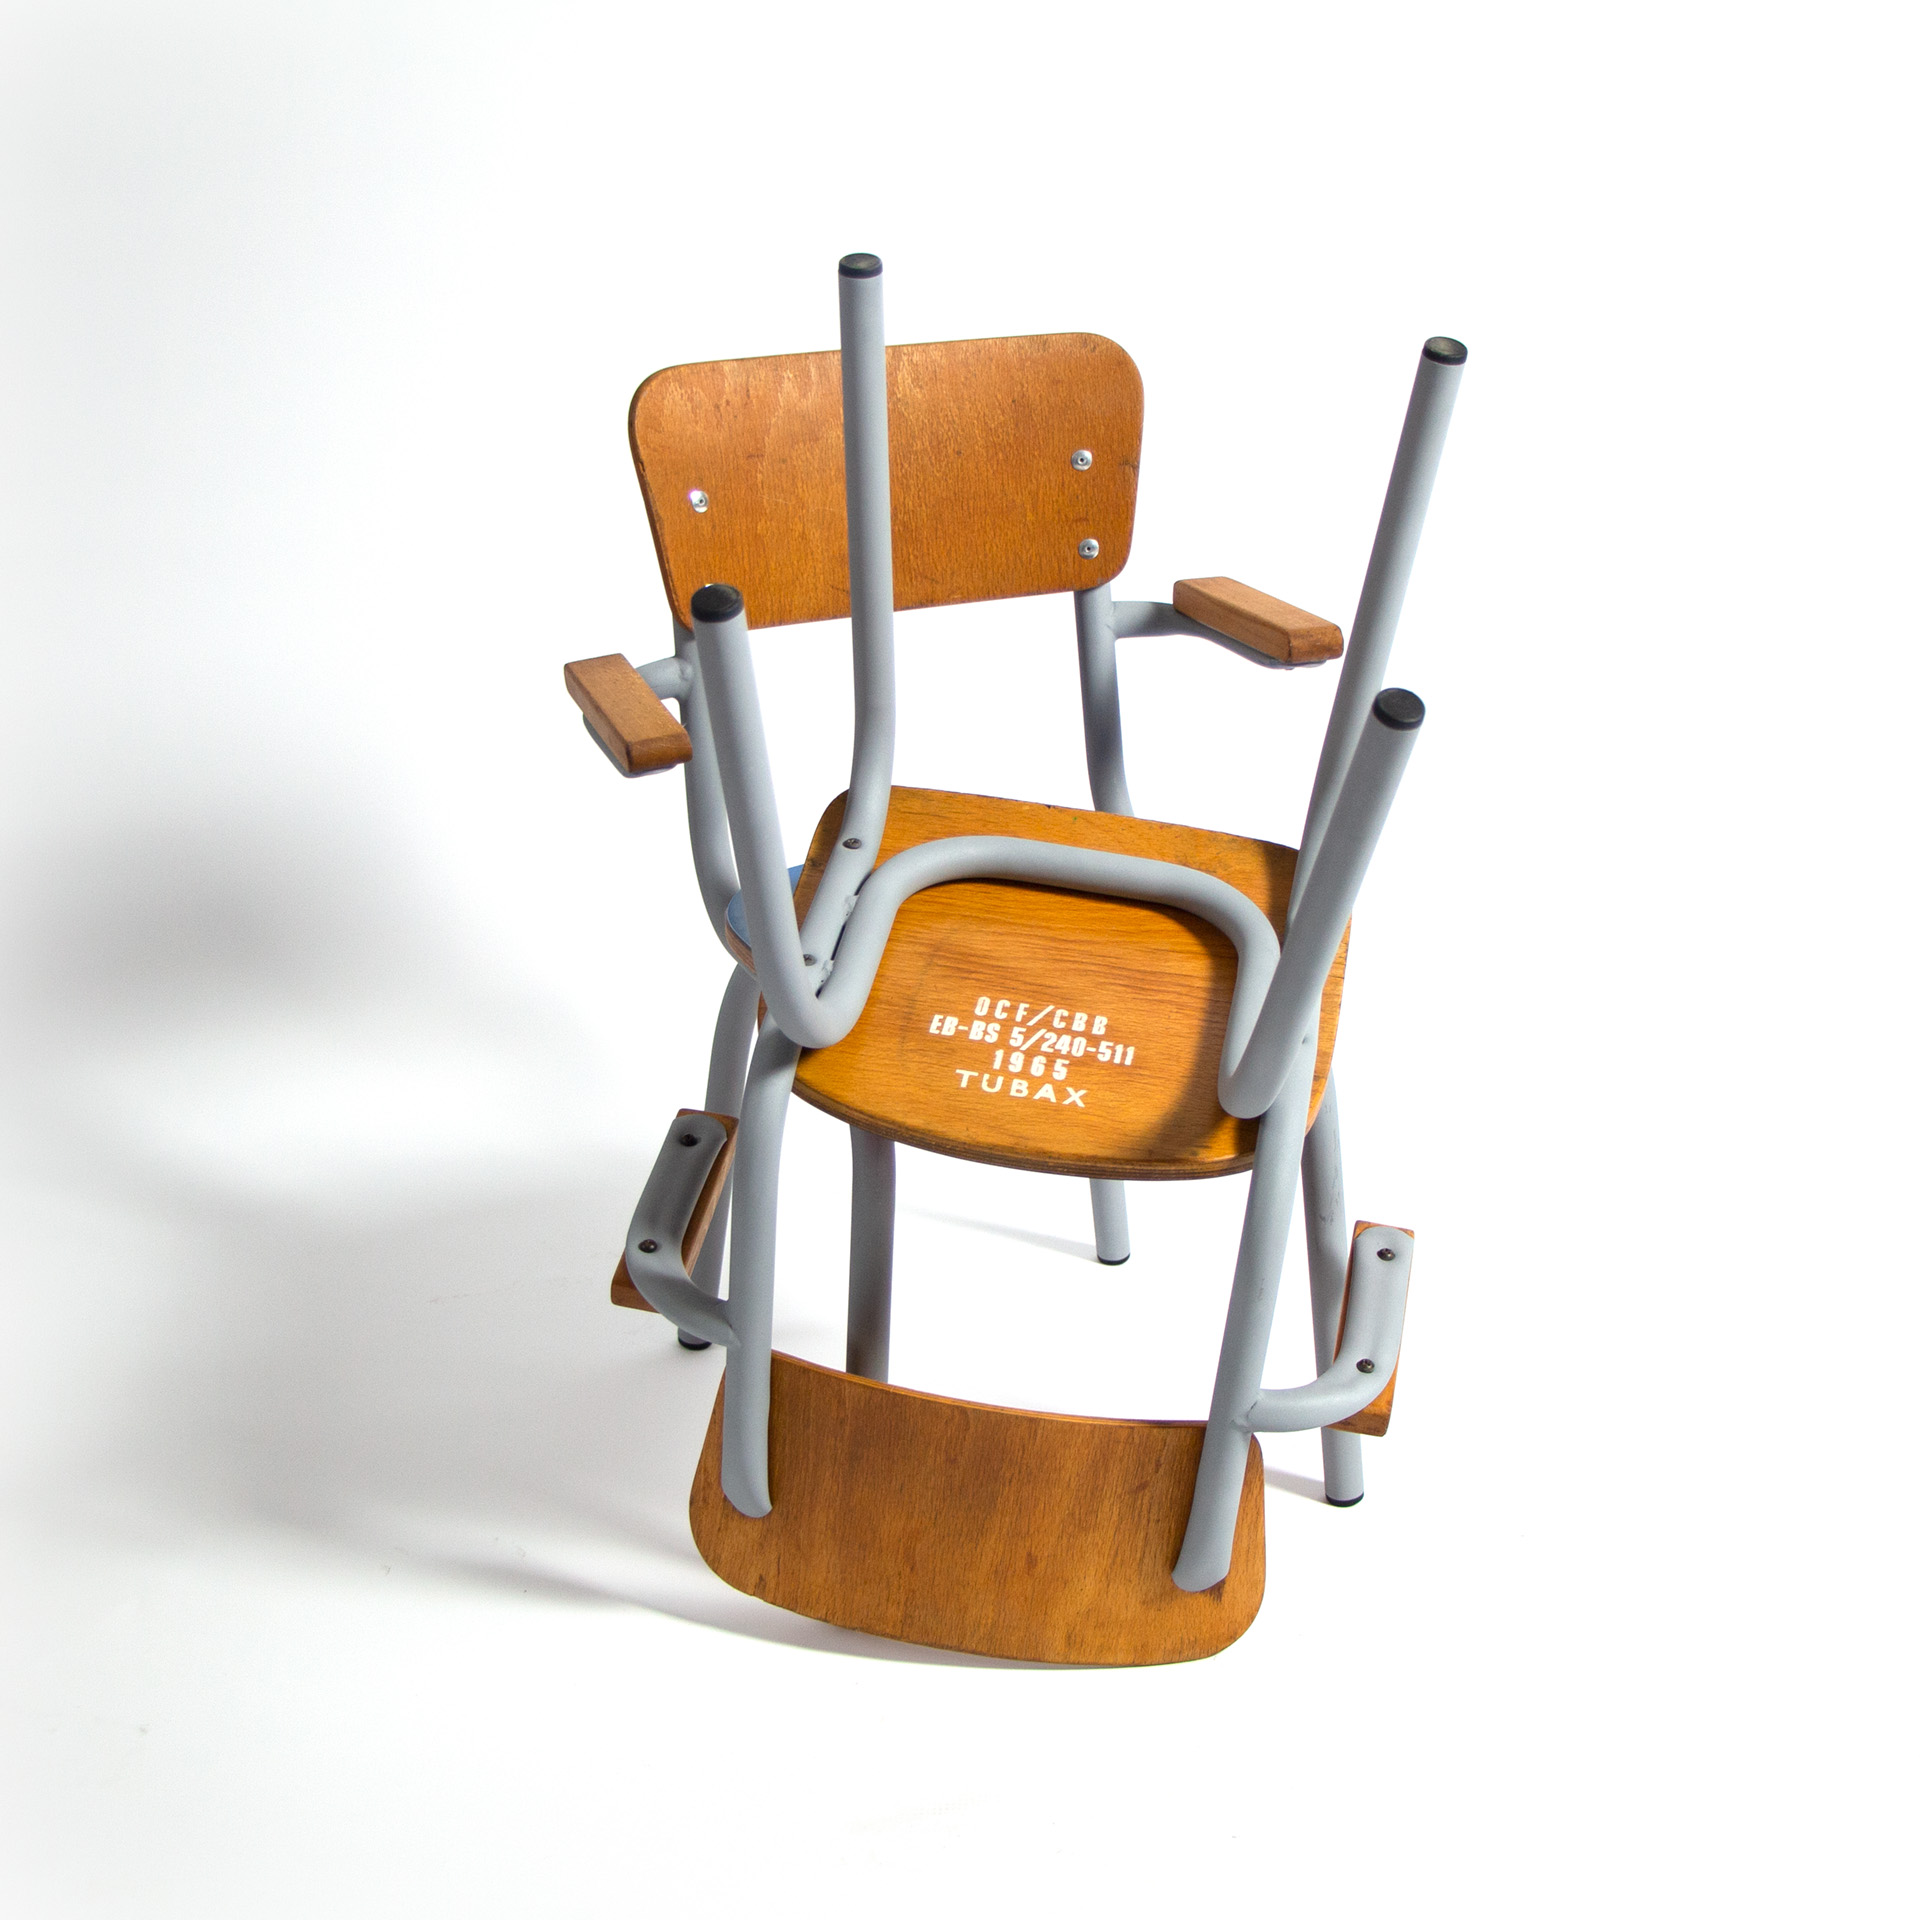 2 Tubax kleuter stoelen